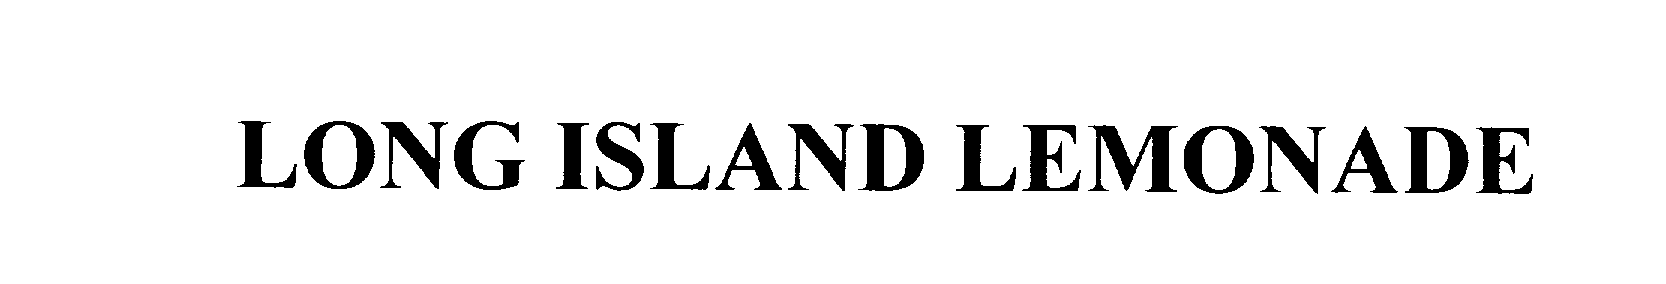  LONG ISLAND LEMONADE